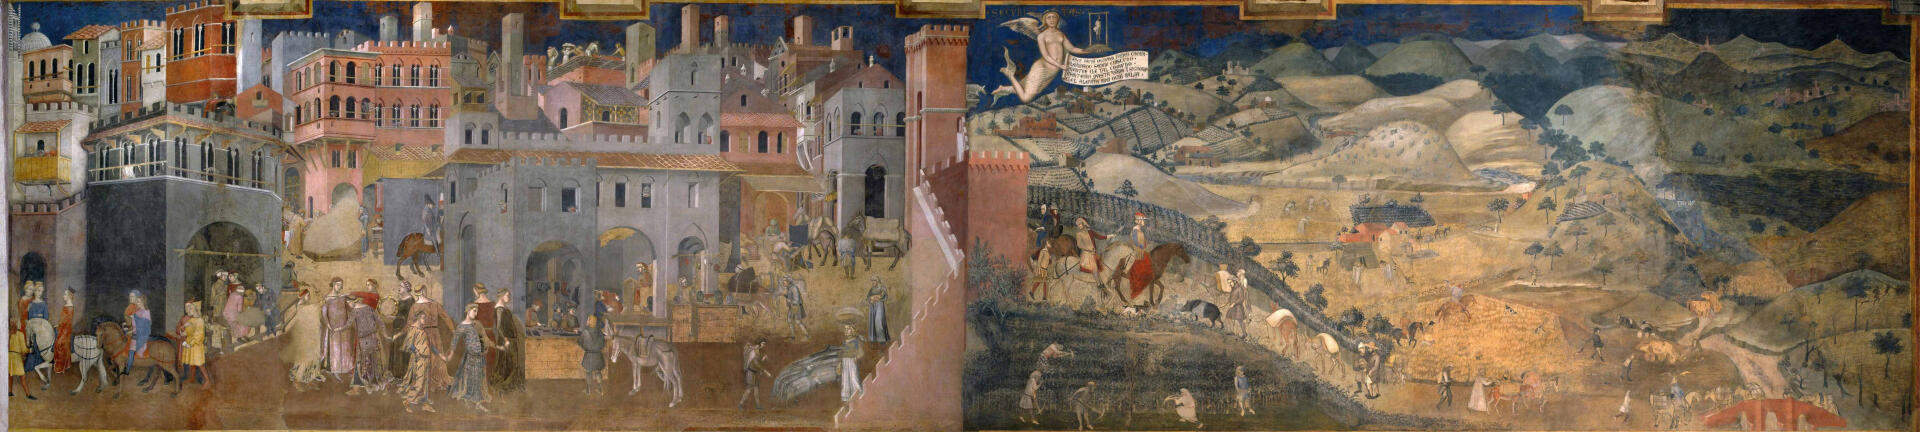 La paroi est de la fresque de Lorenzetti dépeint les effets du bon gouvernement sur la ville et le « contado » (la campagne siennoise).